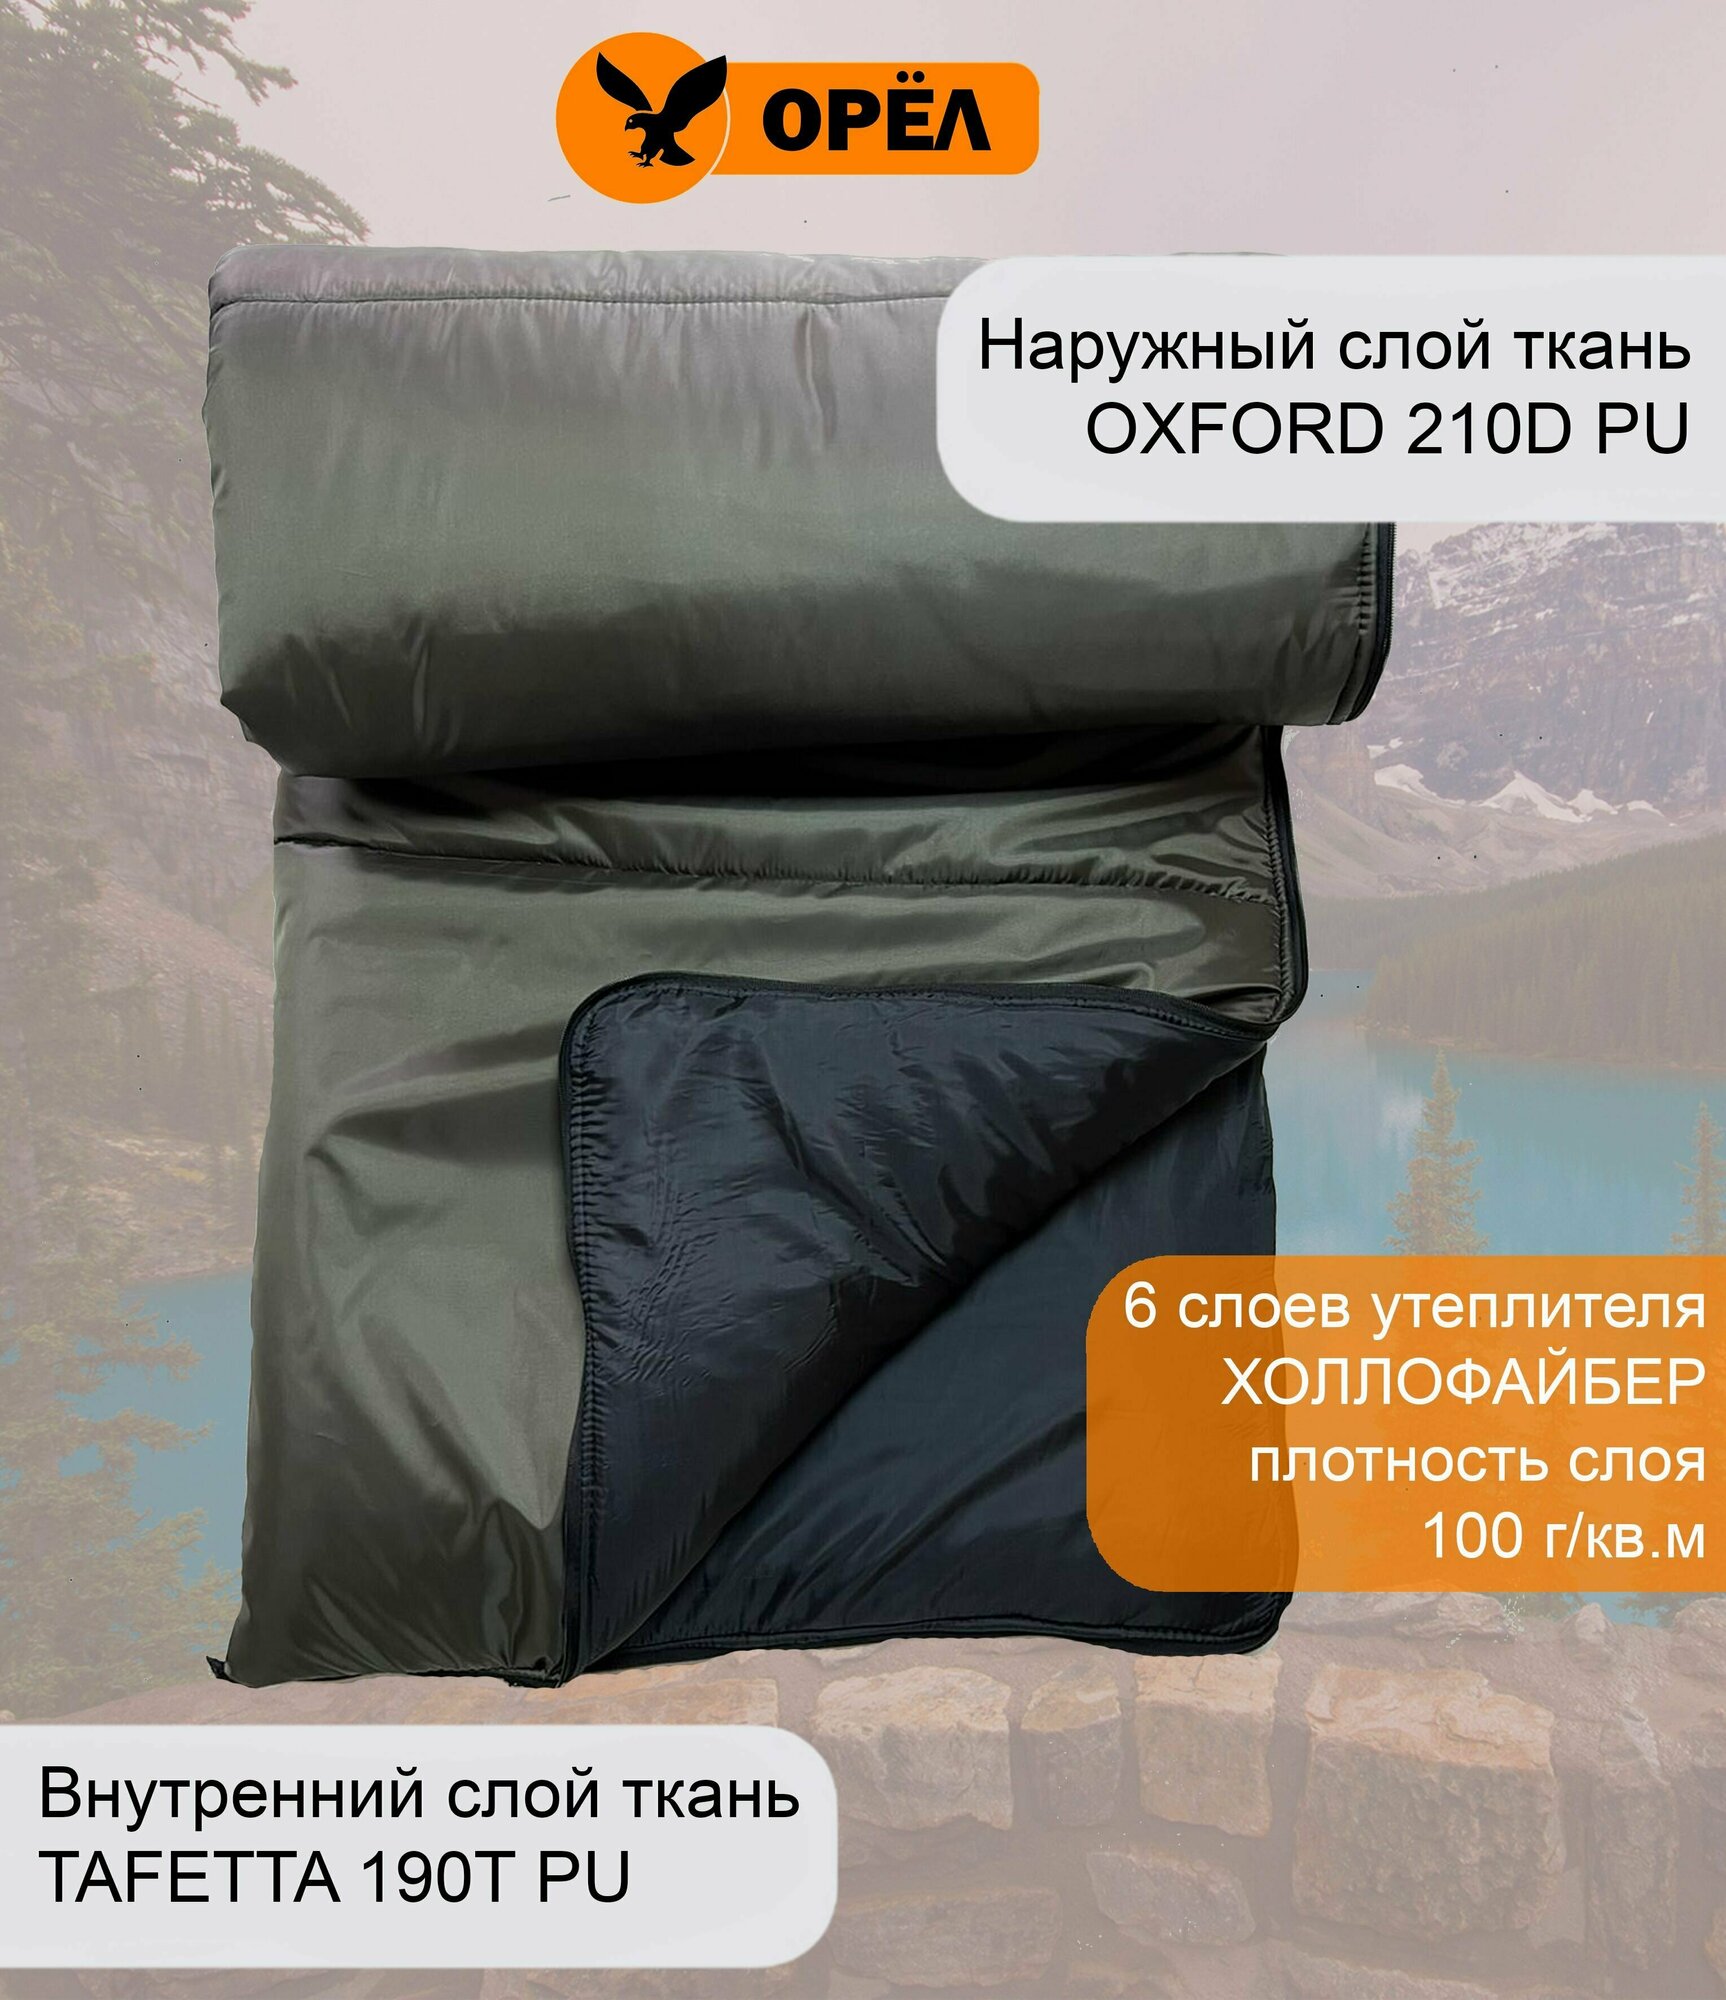 Спальный мешок туристический 2 в 1 одеяло ширина 90 см